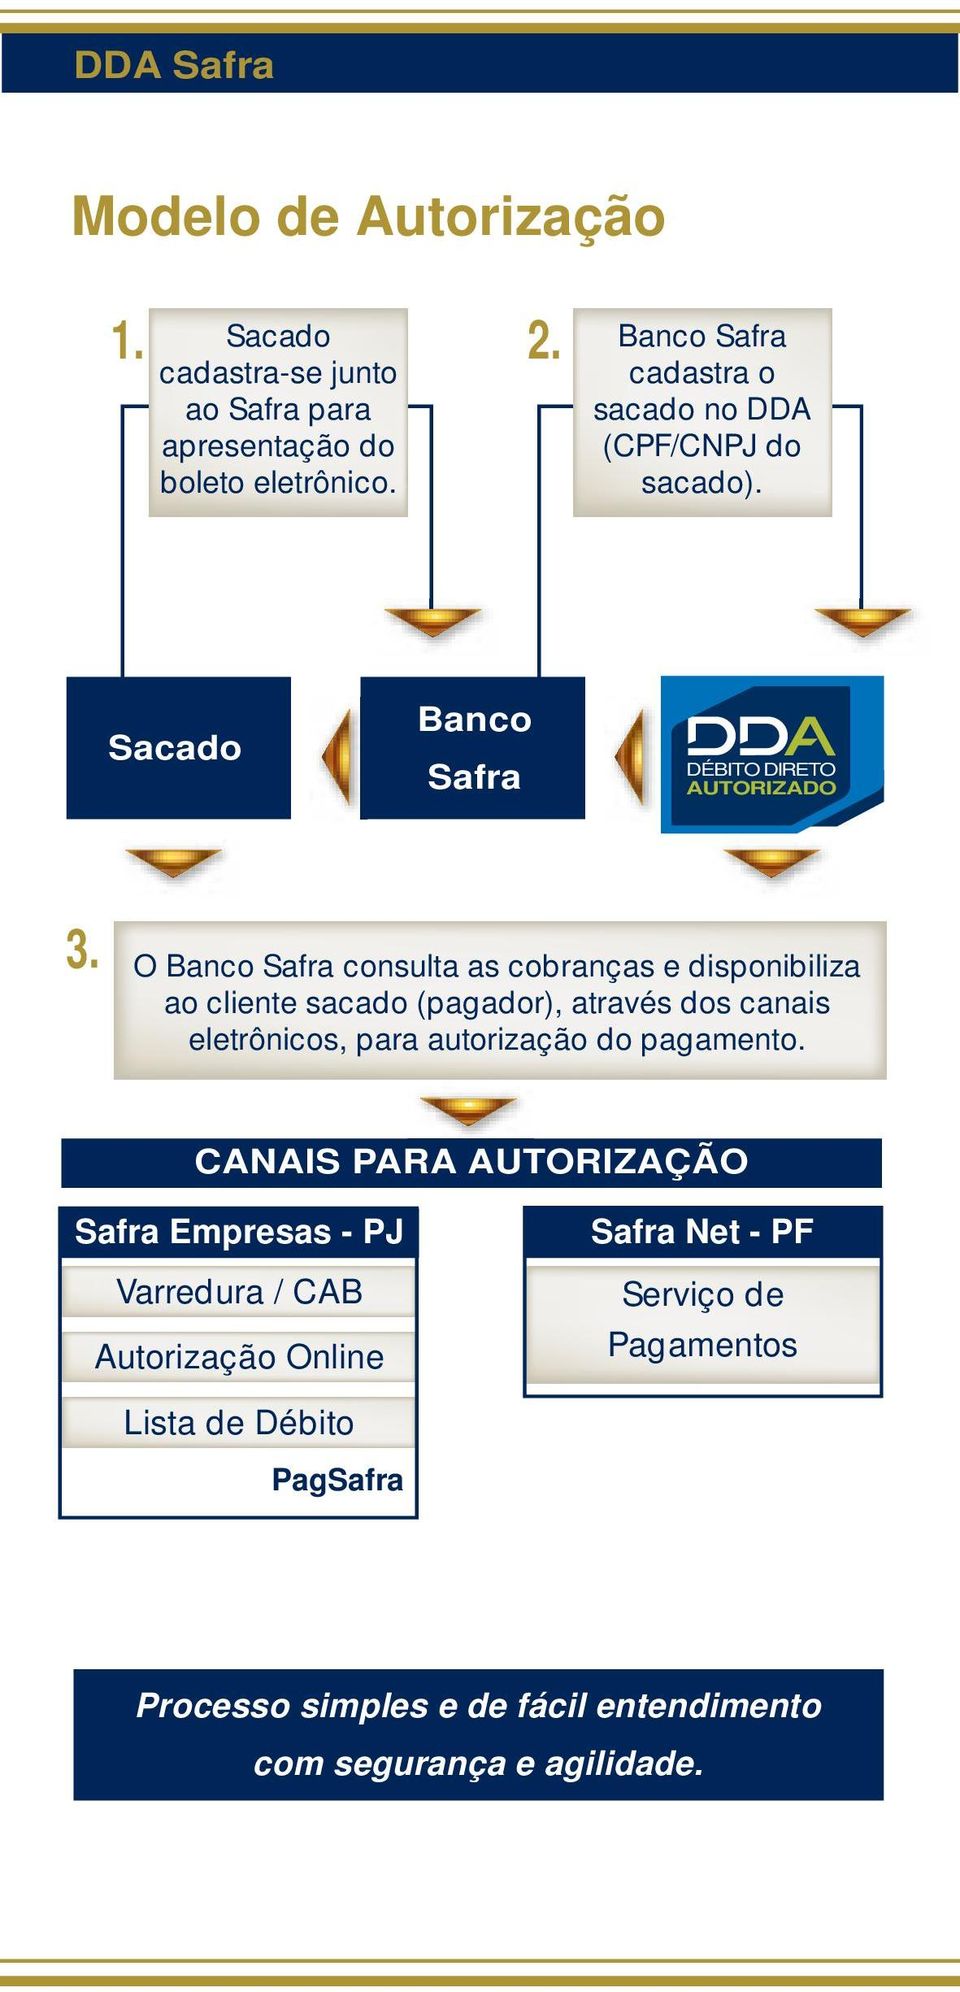 O Banco Safra consulta as cobranças e disponibiliza ao cliente sacado (pagador), através dos canais eletrônicos, para autorização do